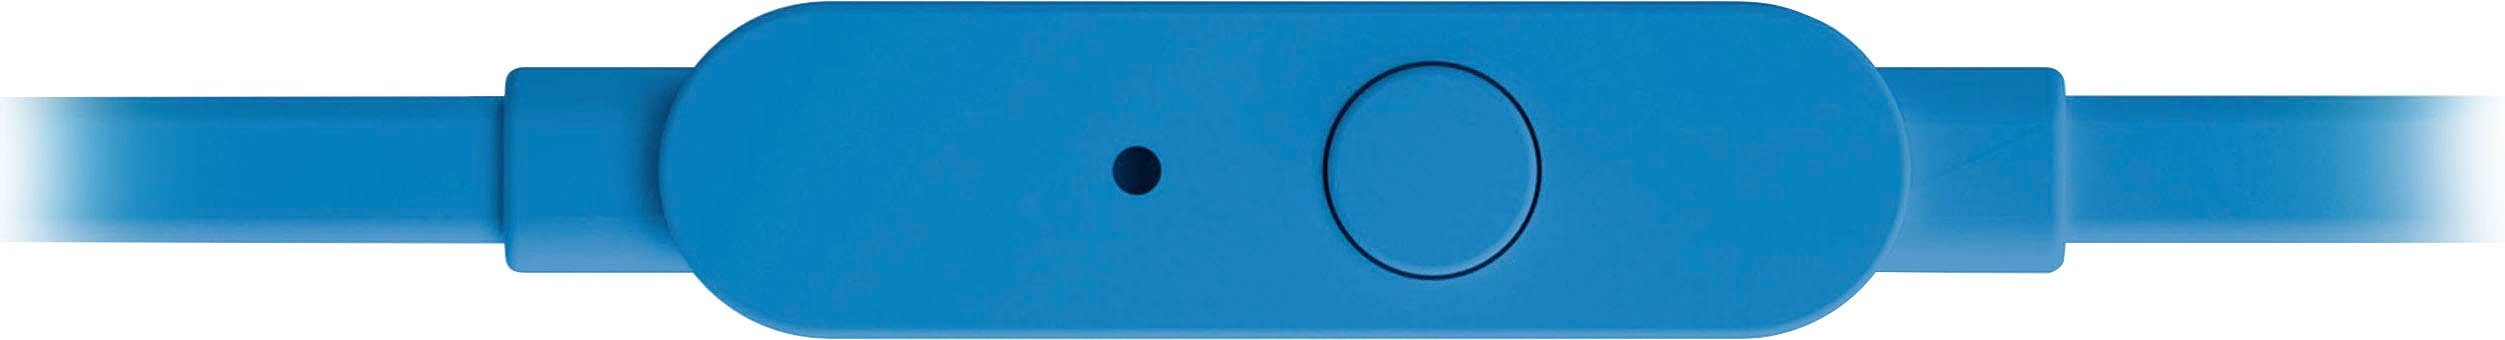 In-Ear-Kopfhörer blau T110 JBL